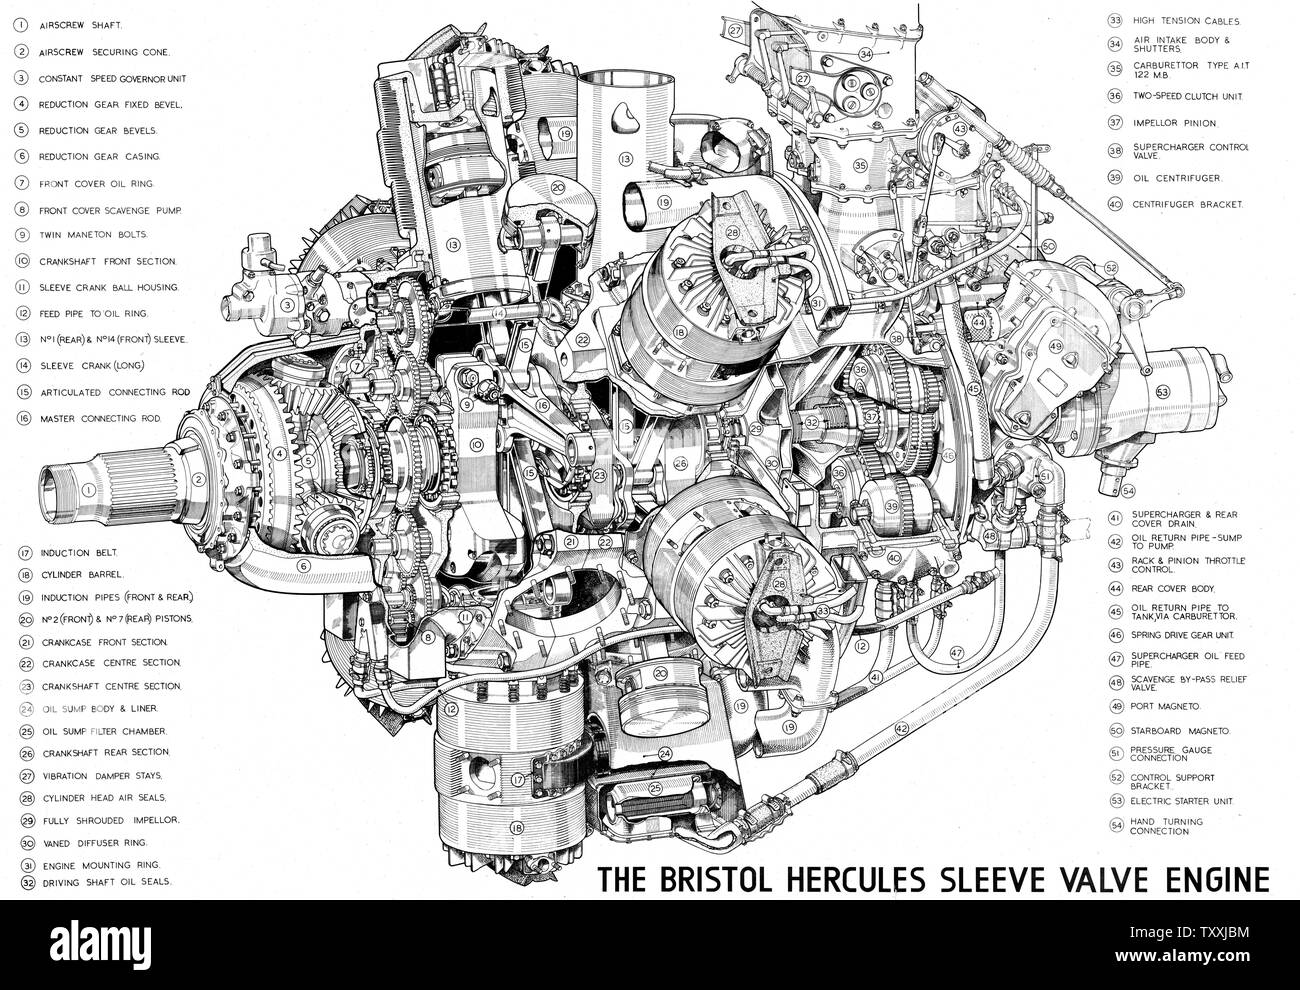 Bristol Hercules aircraft engine cutaway drawing, circa 1943 (44266118) Stock Photo